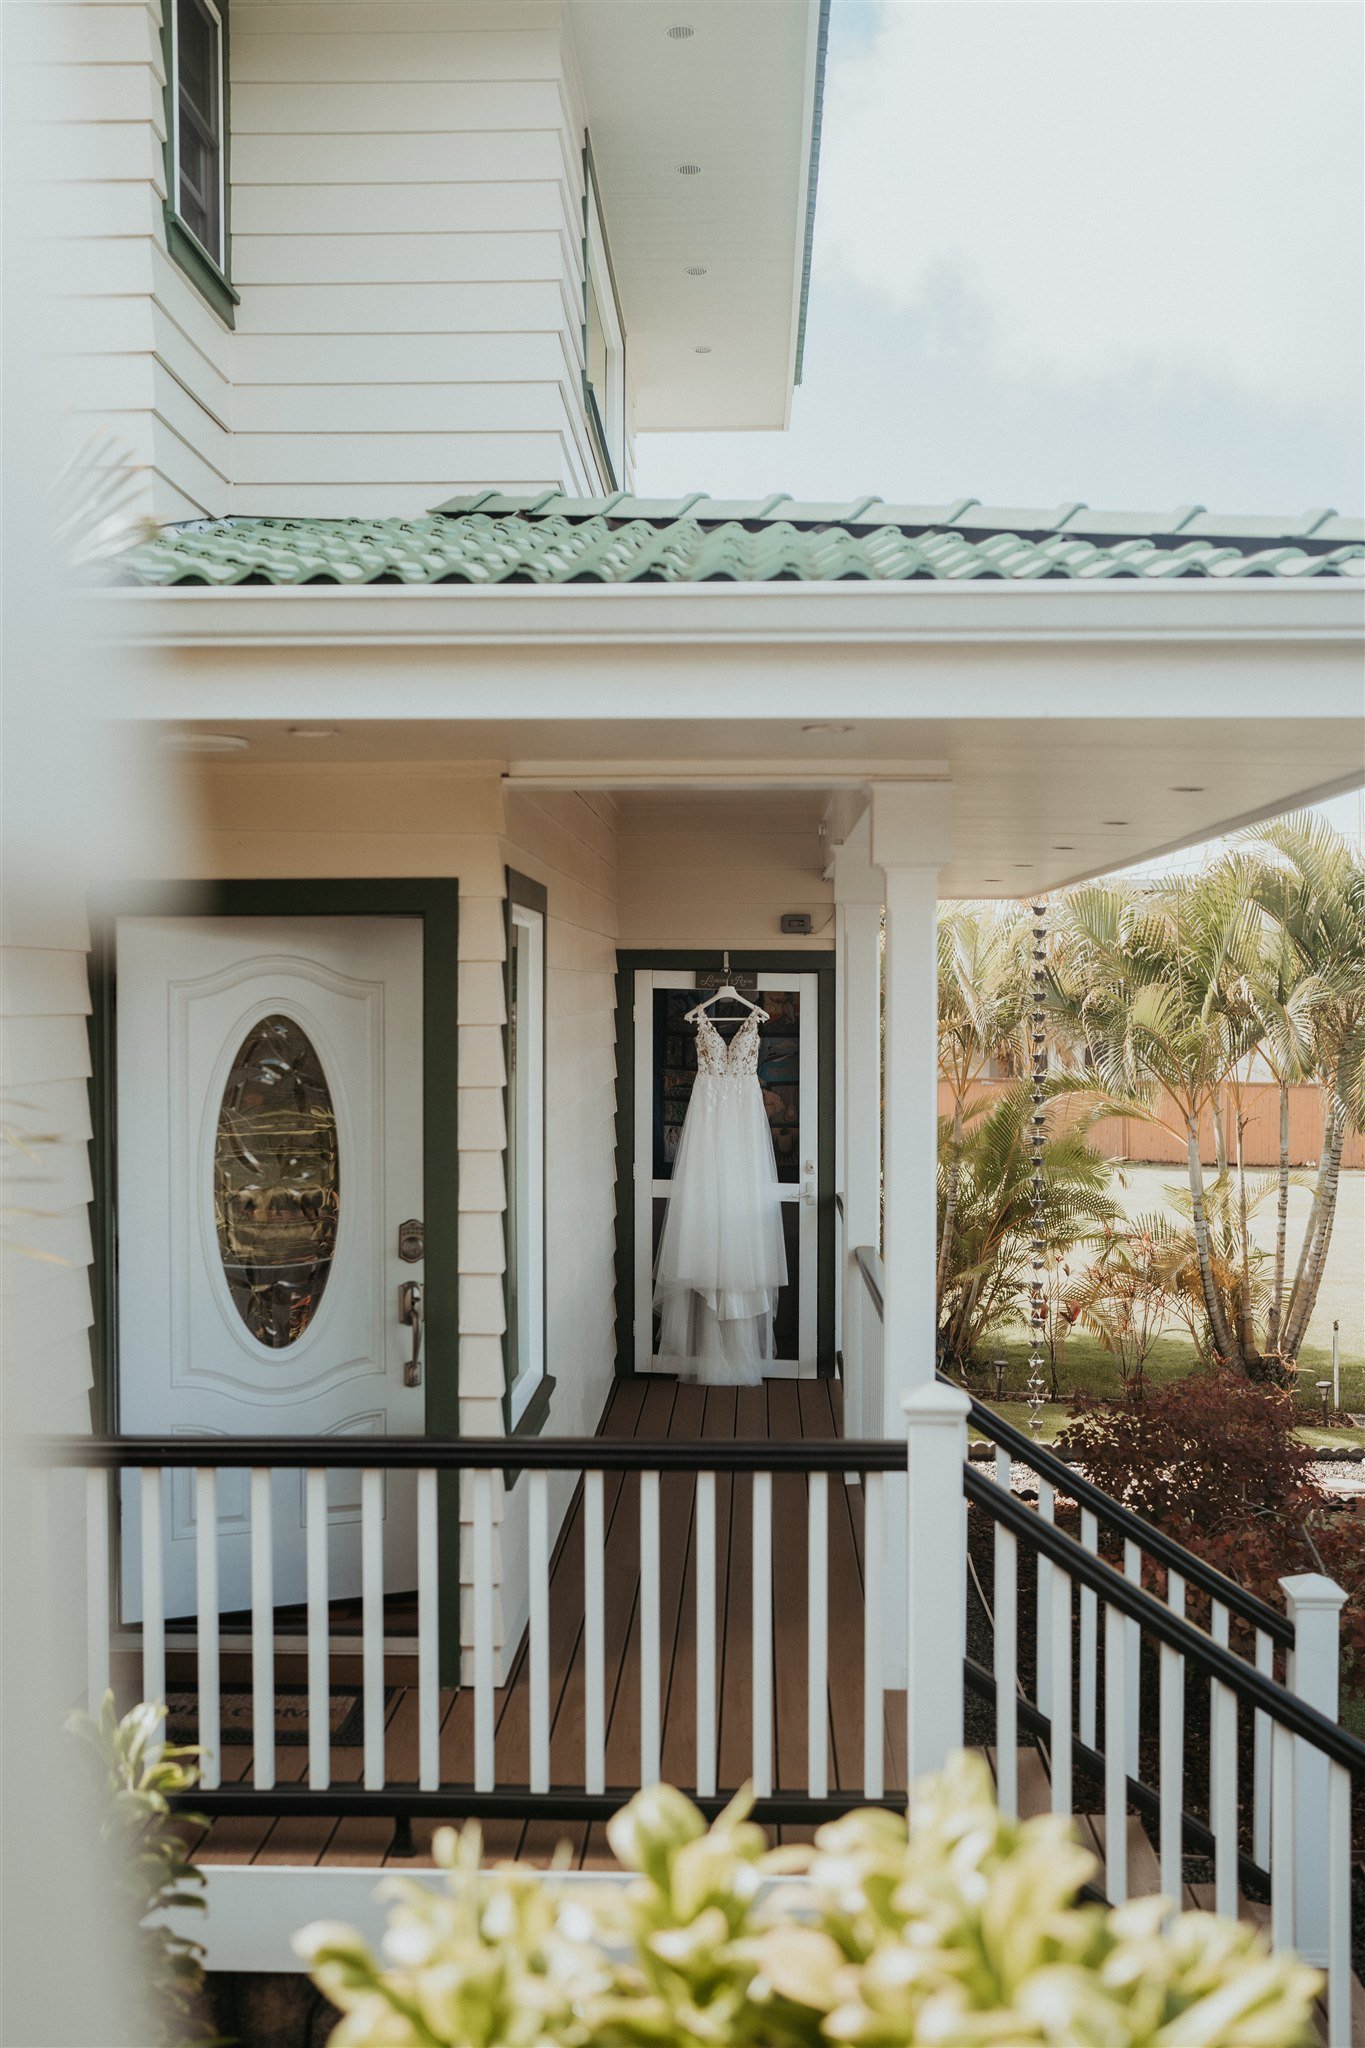 Wedding dress hanging on front door of house